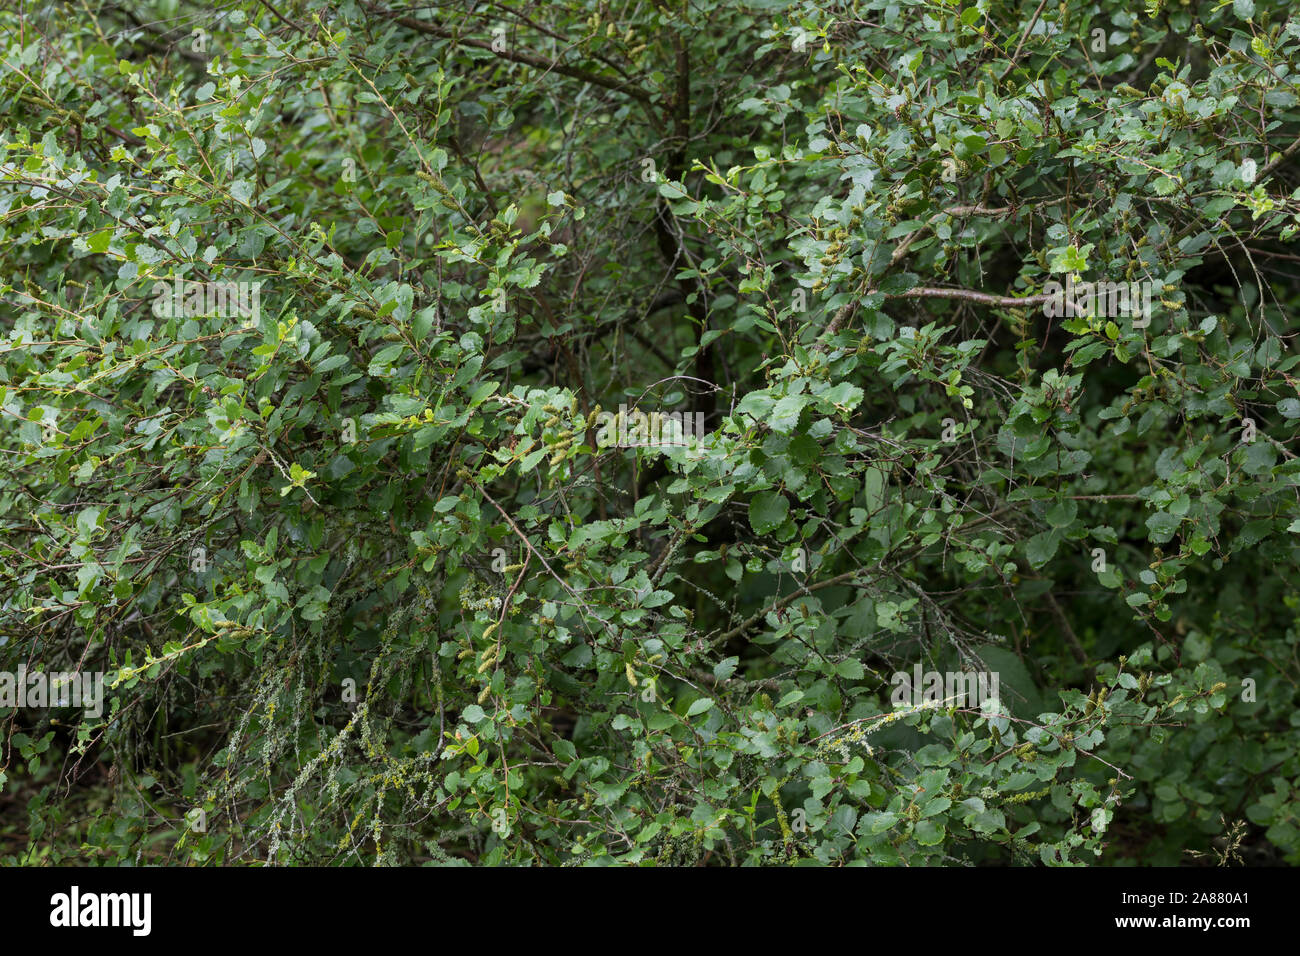 Strauch-Birke, Strauchbirke, Niedrige Birke, Betula humilis, shrubby birch Stock Photo